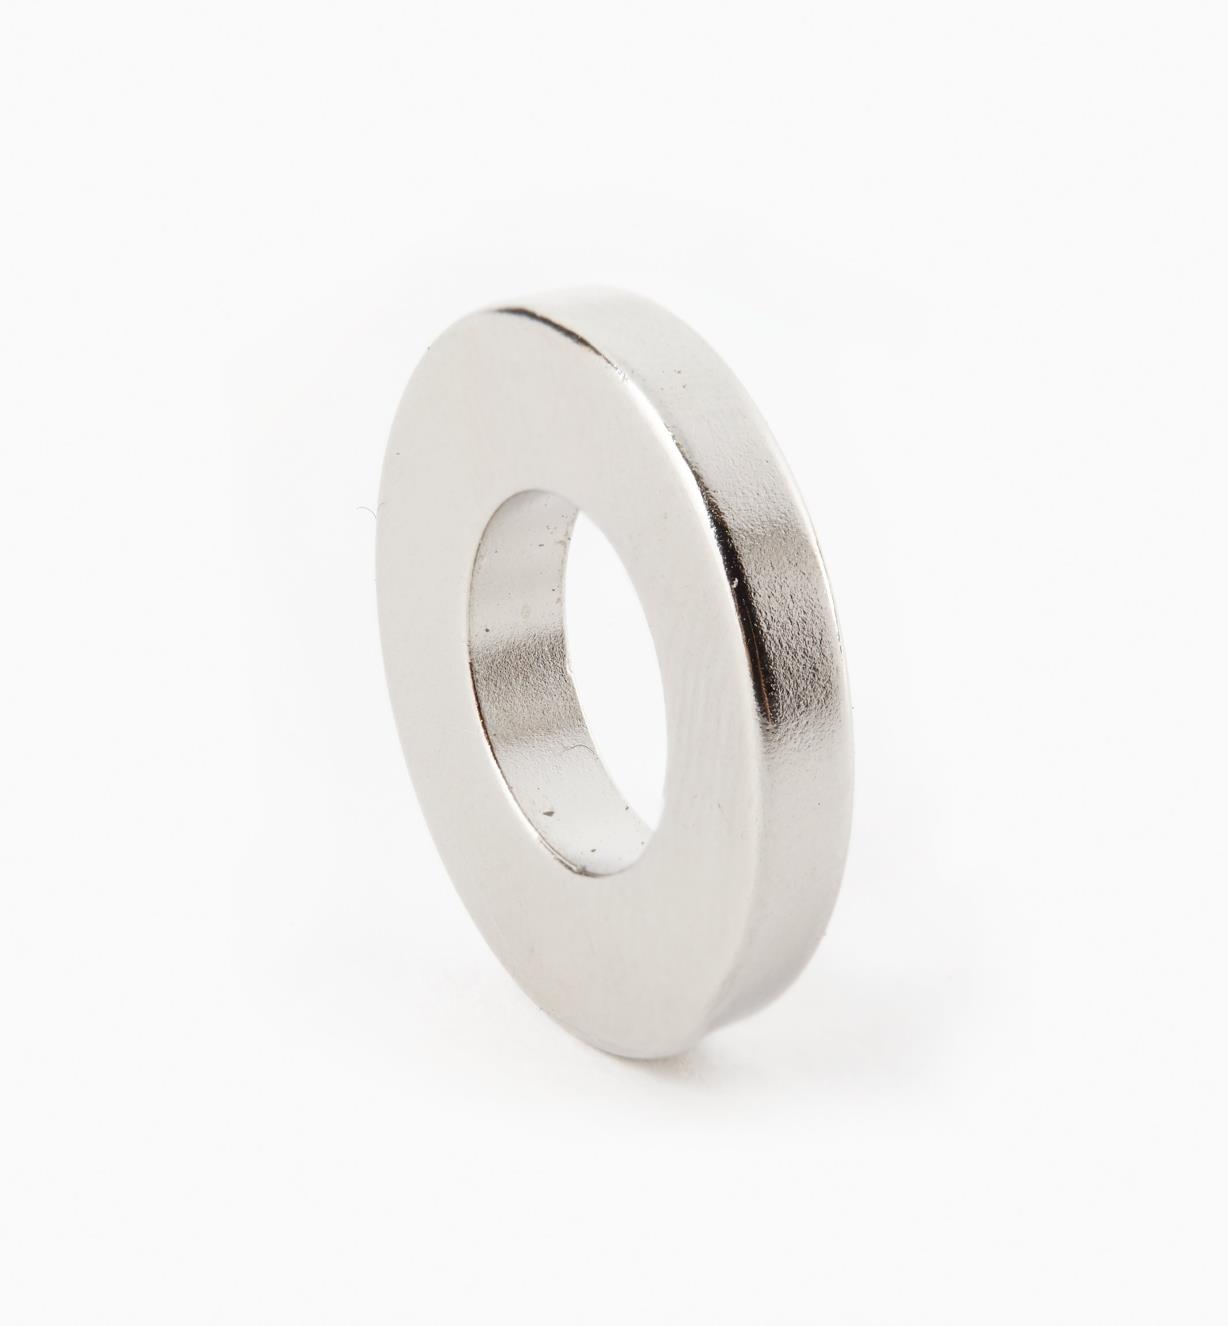 99K3704 - 3/4" x 1/8" (3/8") Ring Magnet